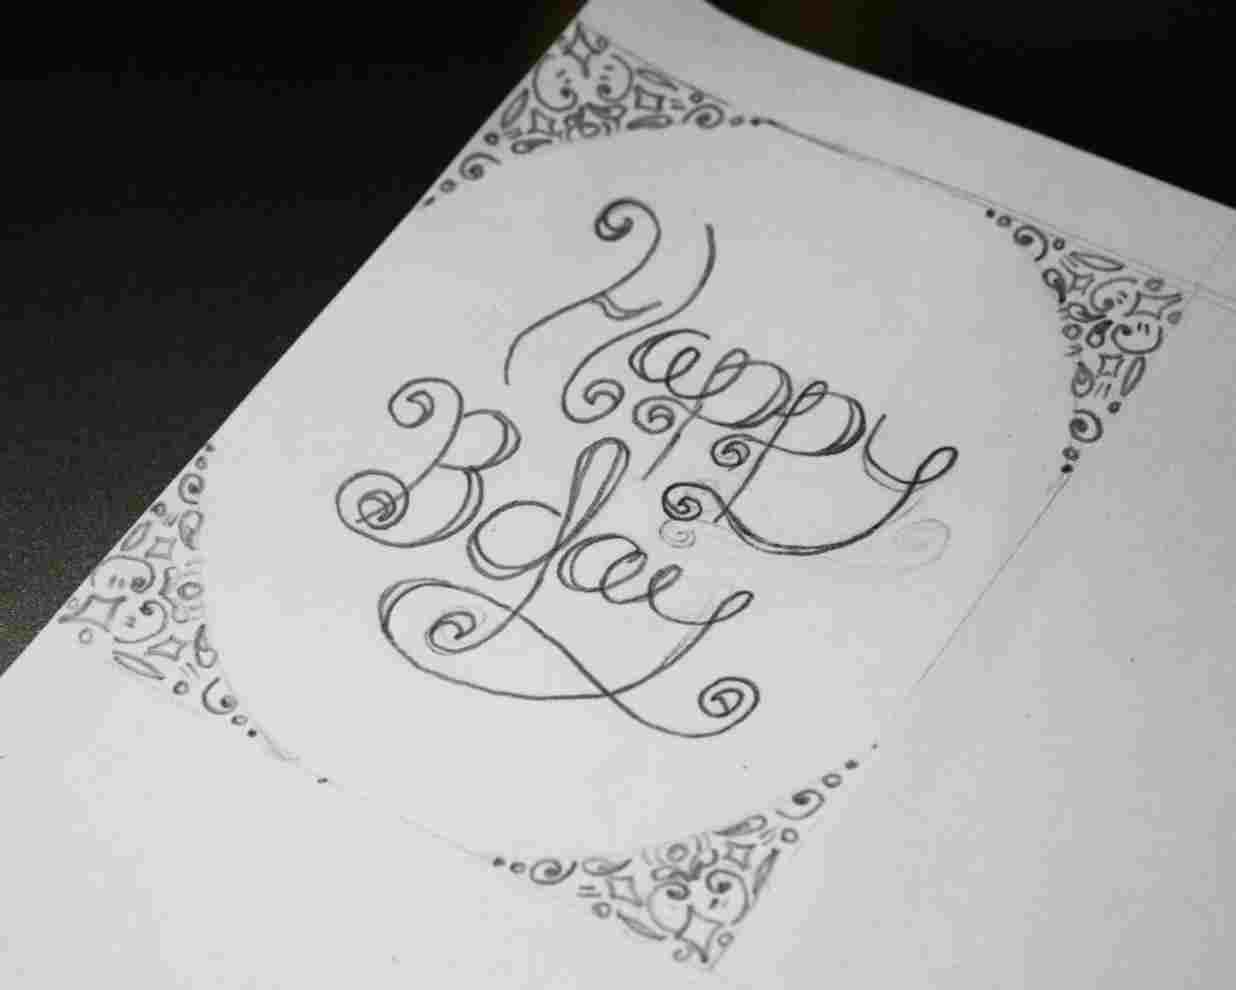 Hand Drawn Birthday Card Ideas Hand Drawn Birthday Card Drawing Ideas